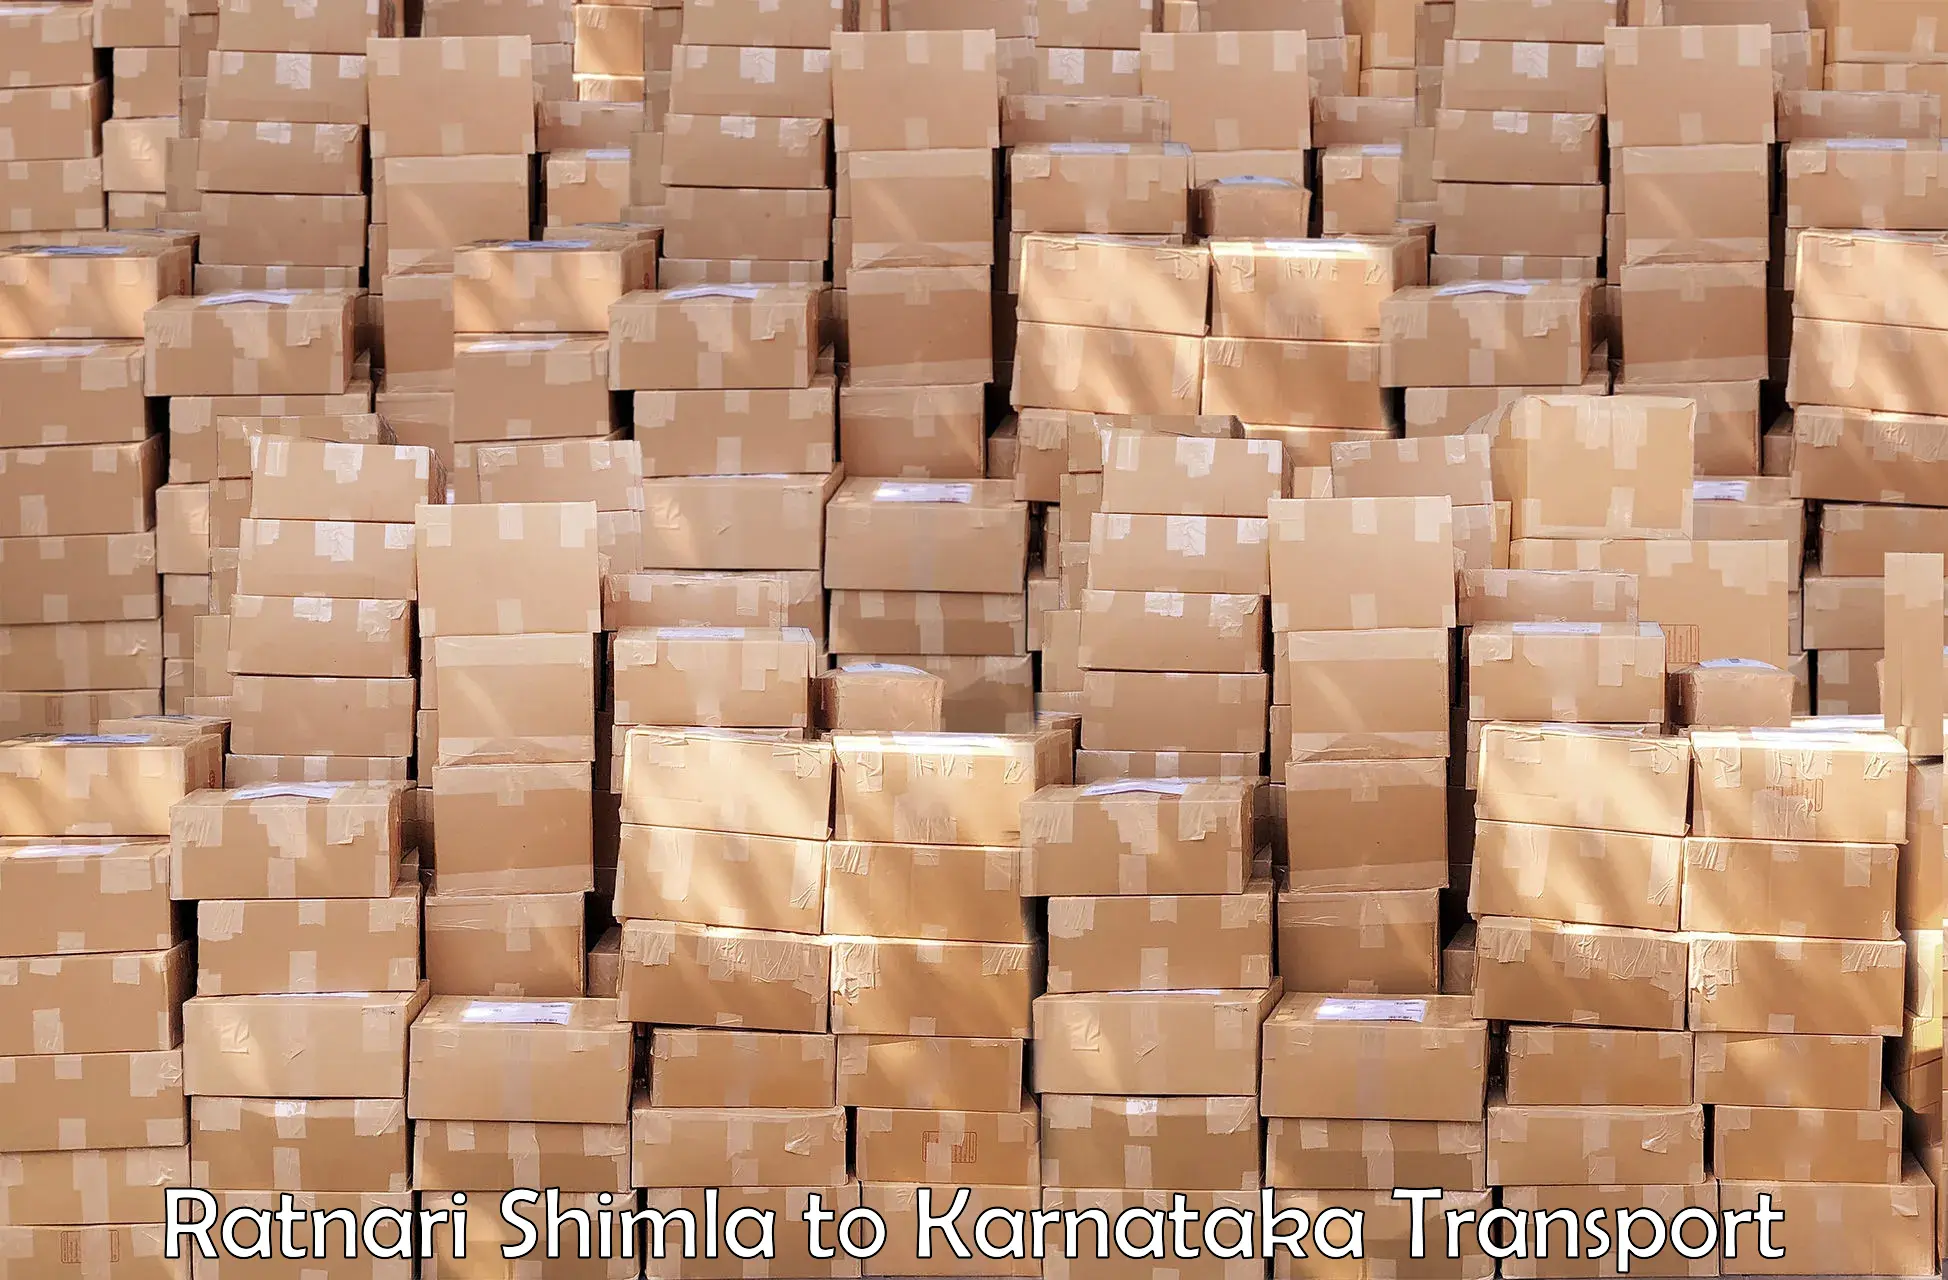 Door to door transport services Ratnari Shimla to Karnataka